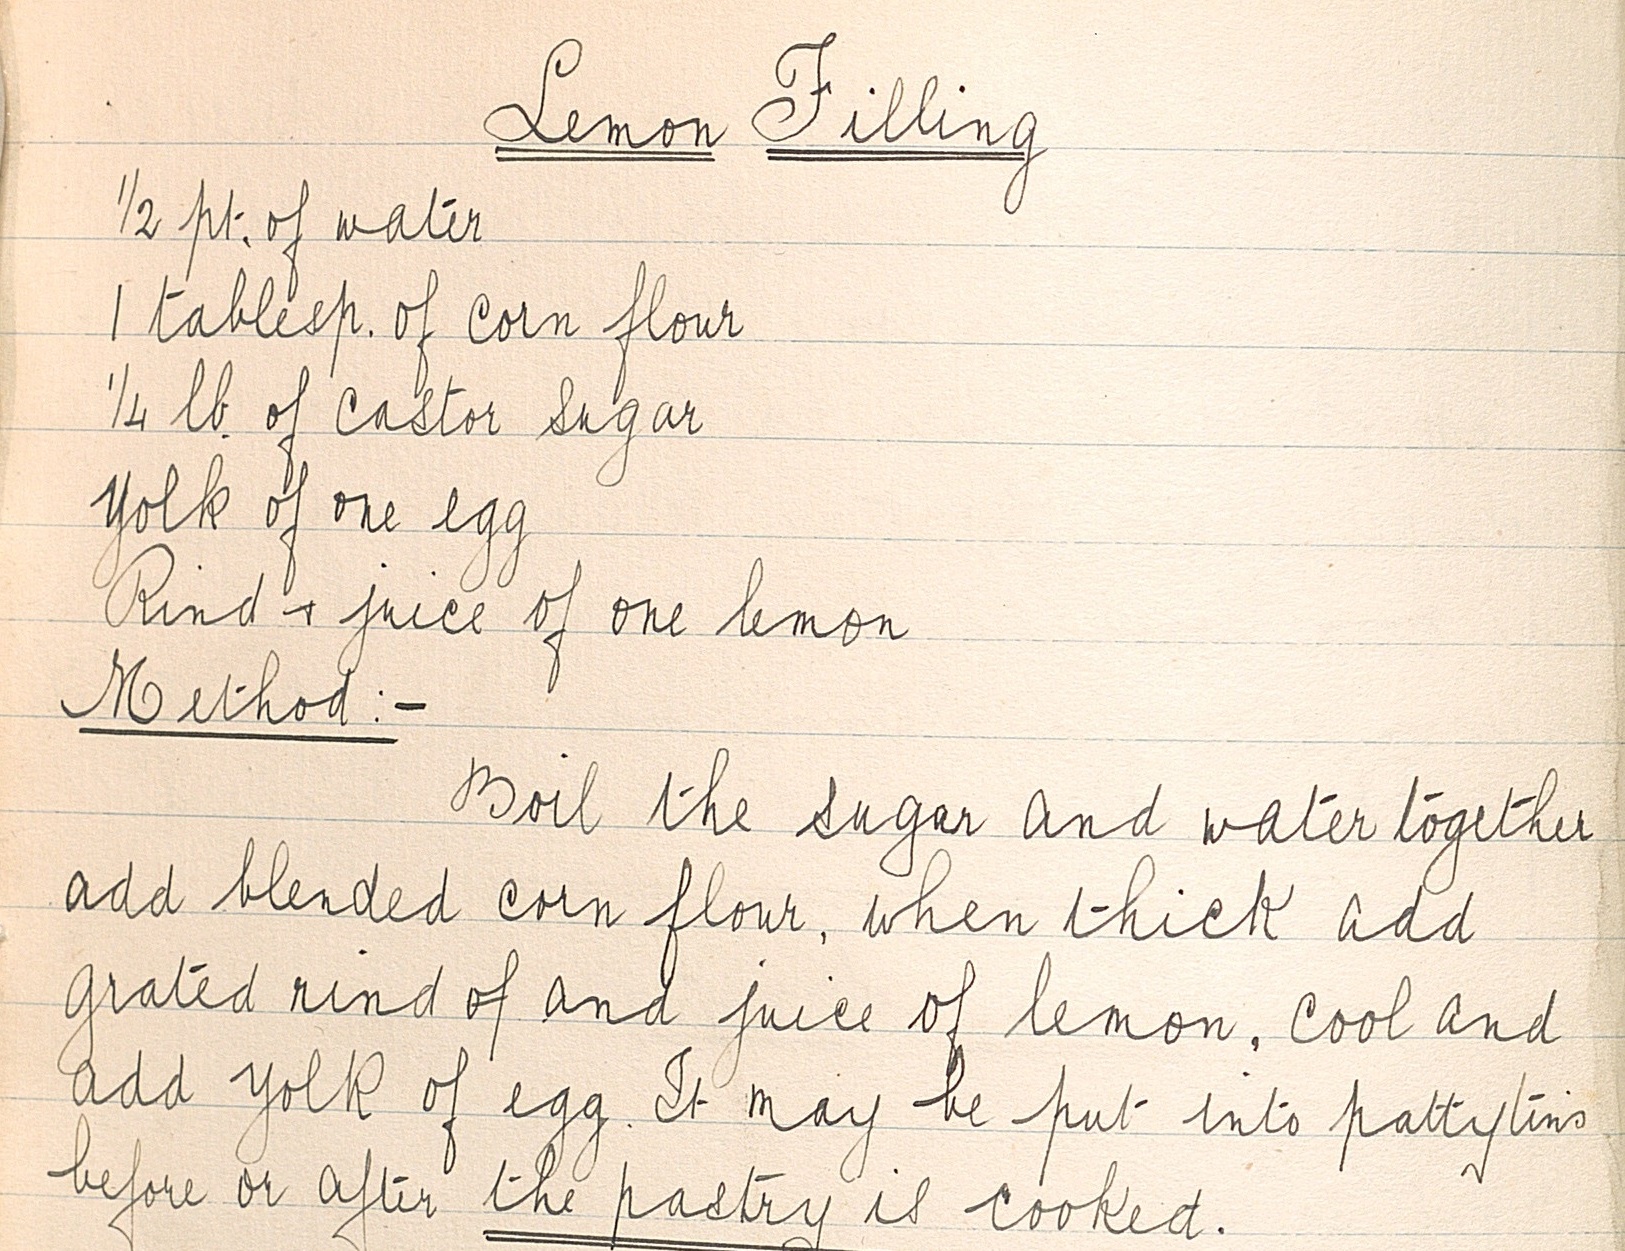 The handwritten recipe for 'Lemon Filling'.